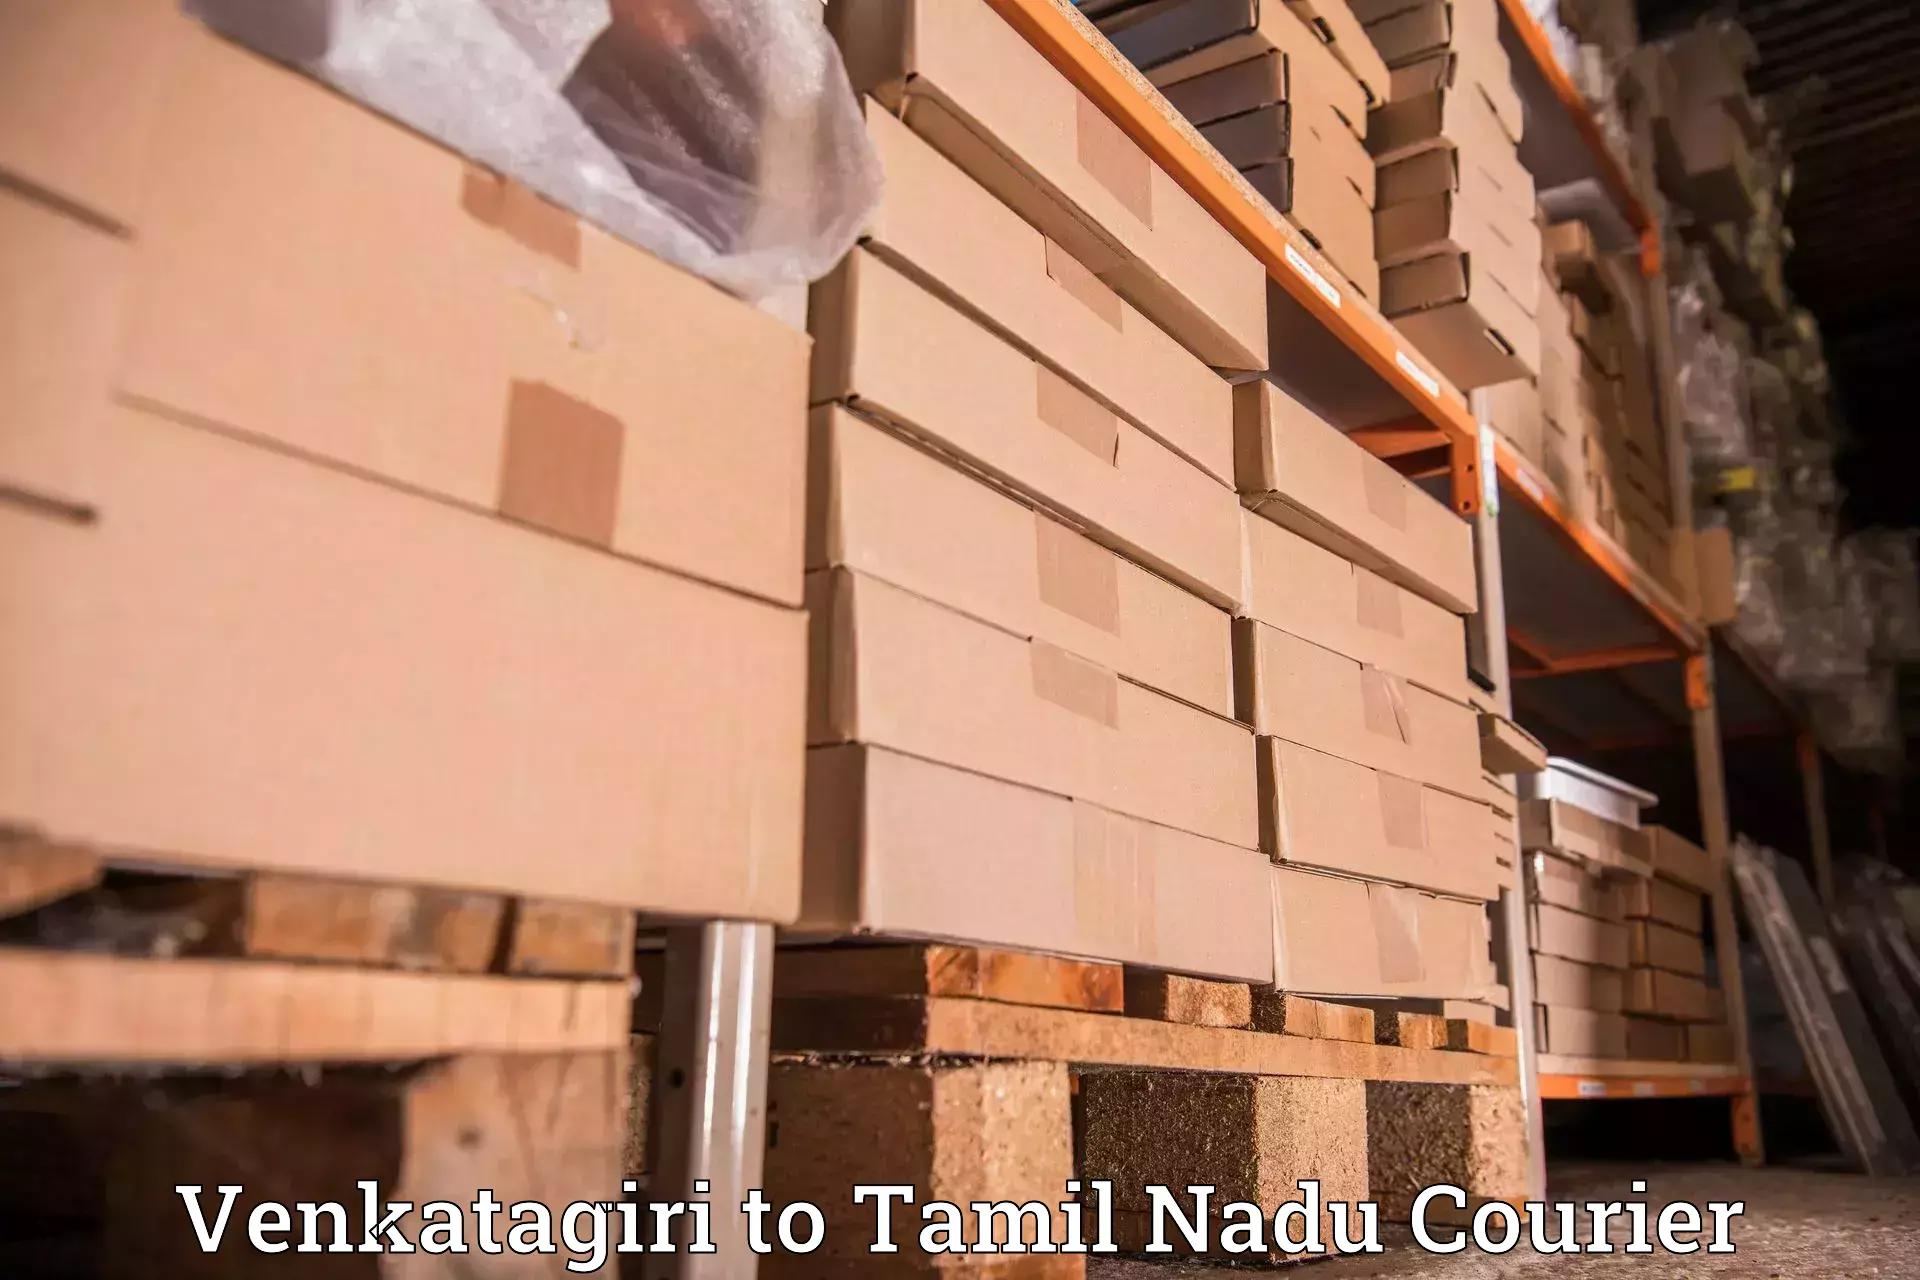 Reliable courier service Venkatagiri to Udumalaipettai